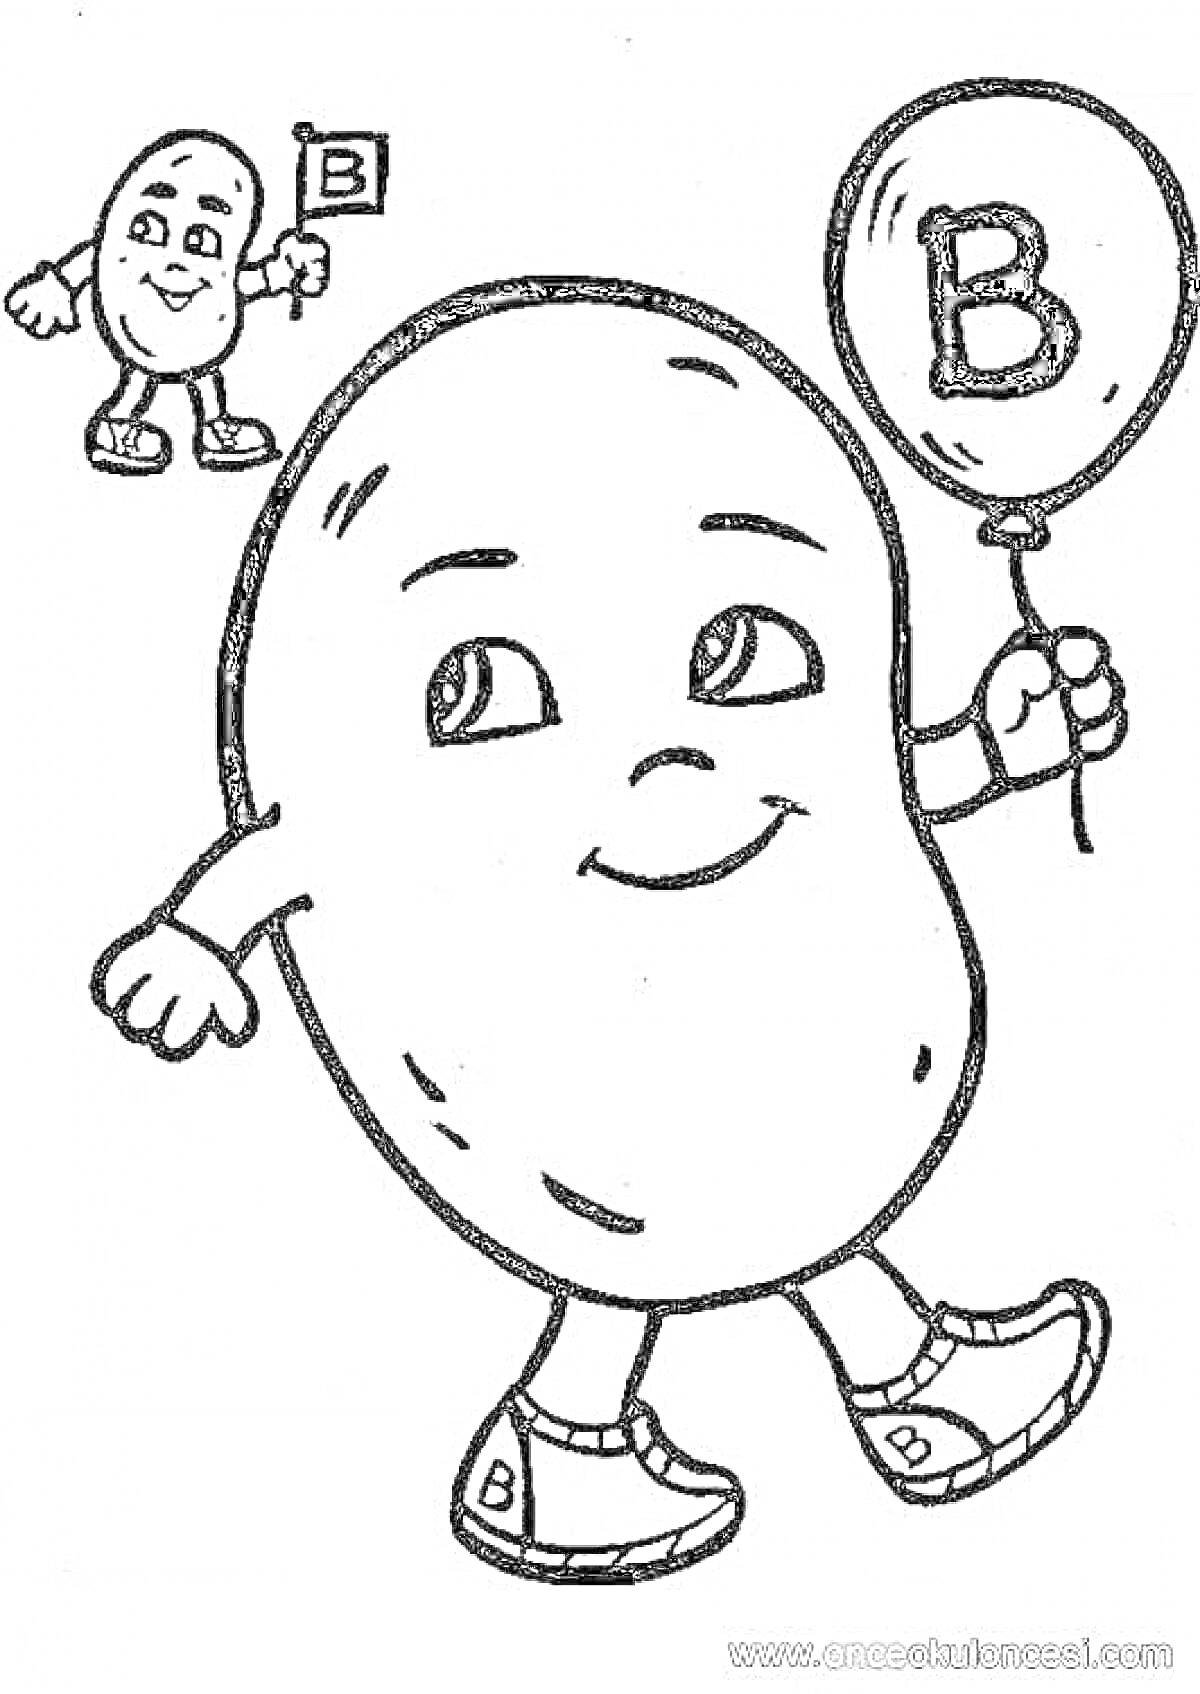 Раскраска Персонаж в форме таблетки с буквой B, держащий шар и маленький флажок с буквой B